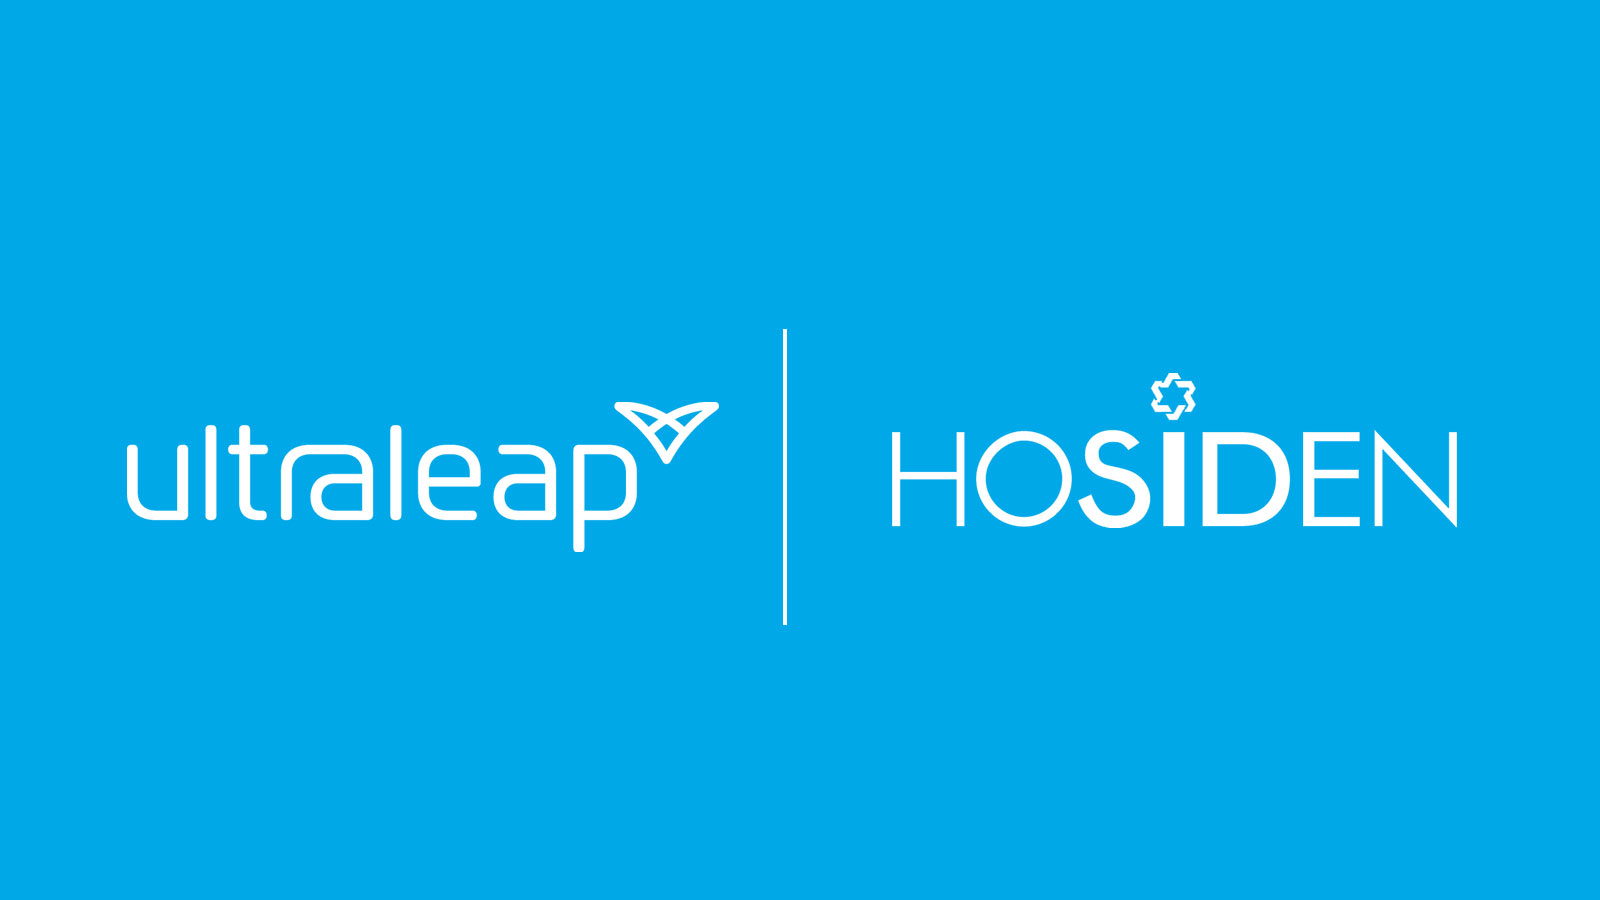 Ultraleap and Hosiden logos